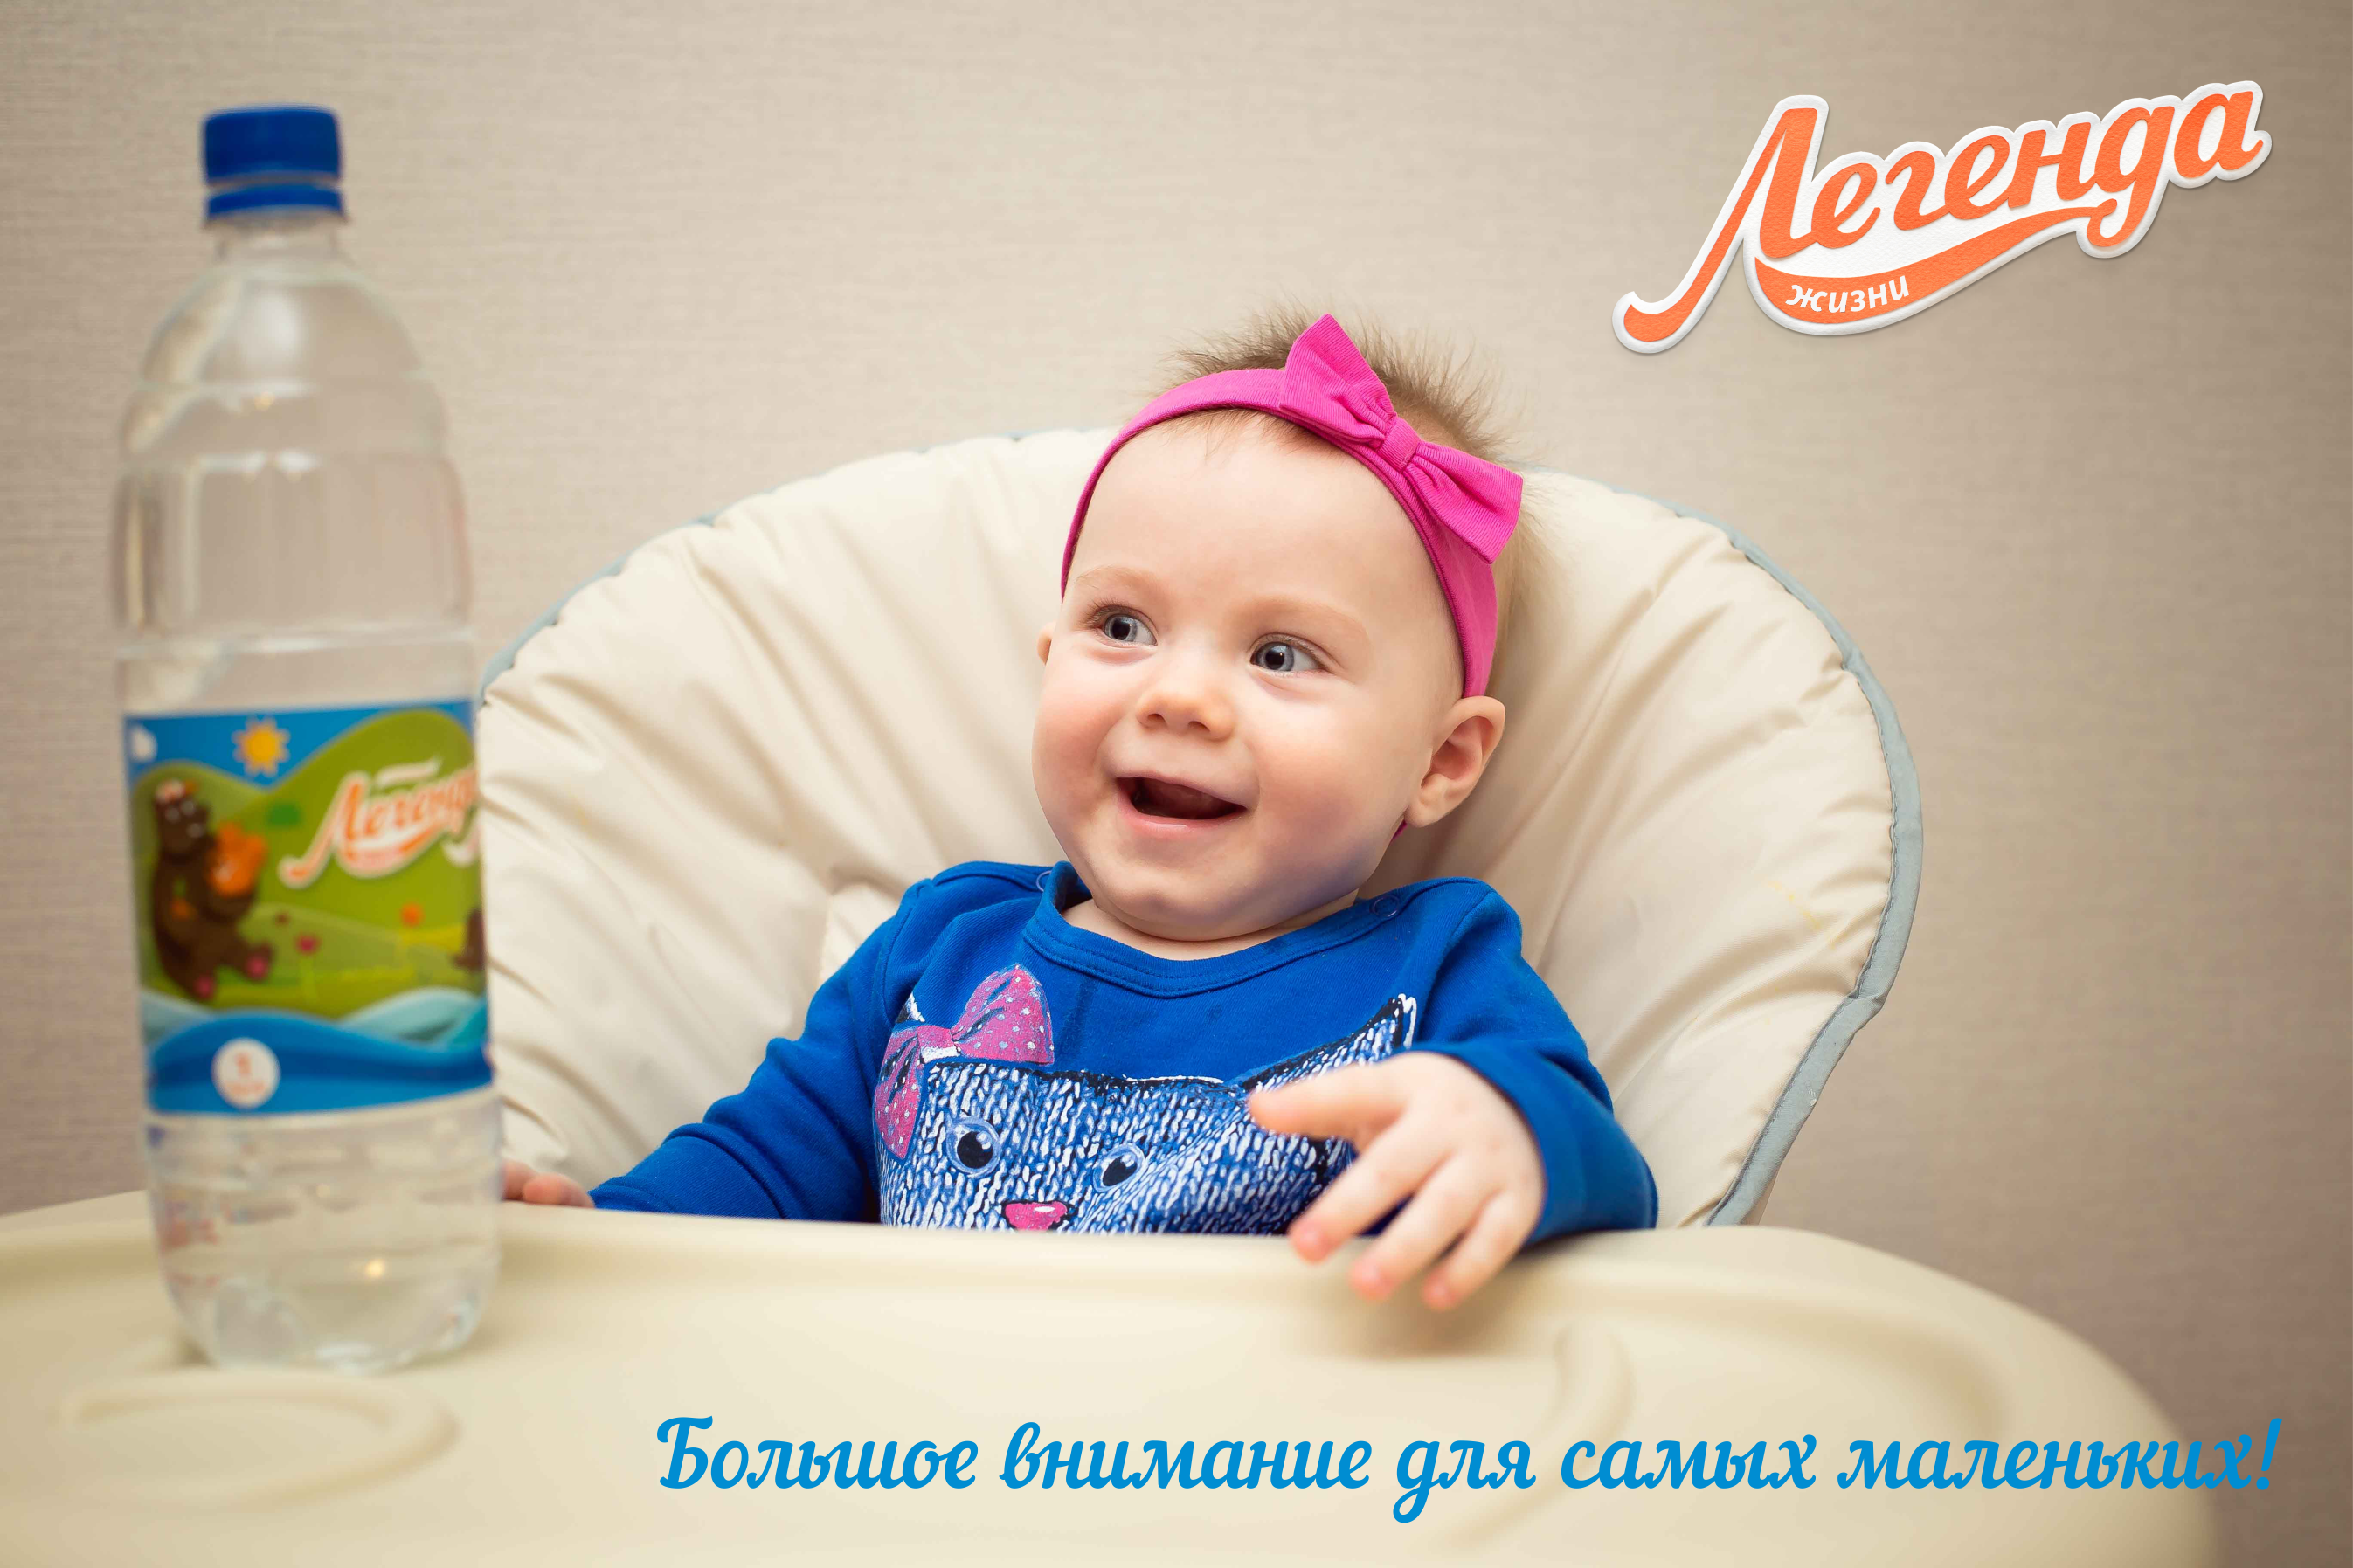 На Алтае начали выпускать воду для детей — новости, предприятий, Алтайские товары